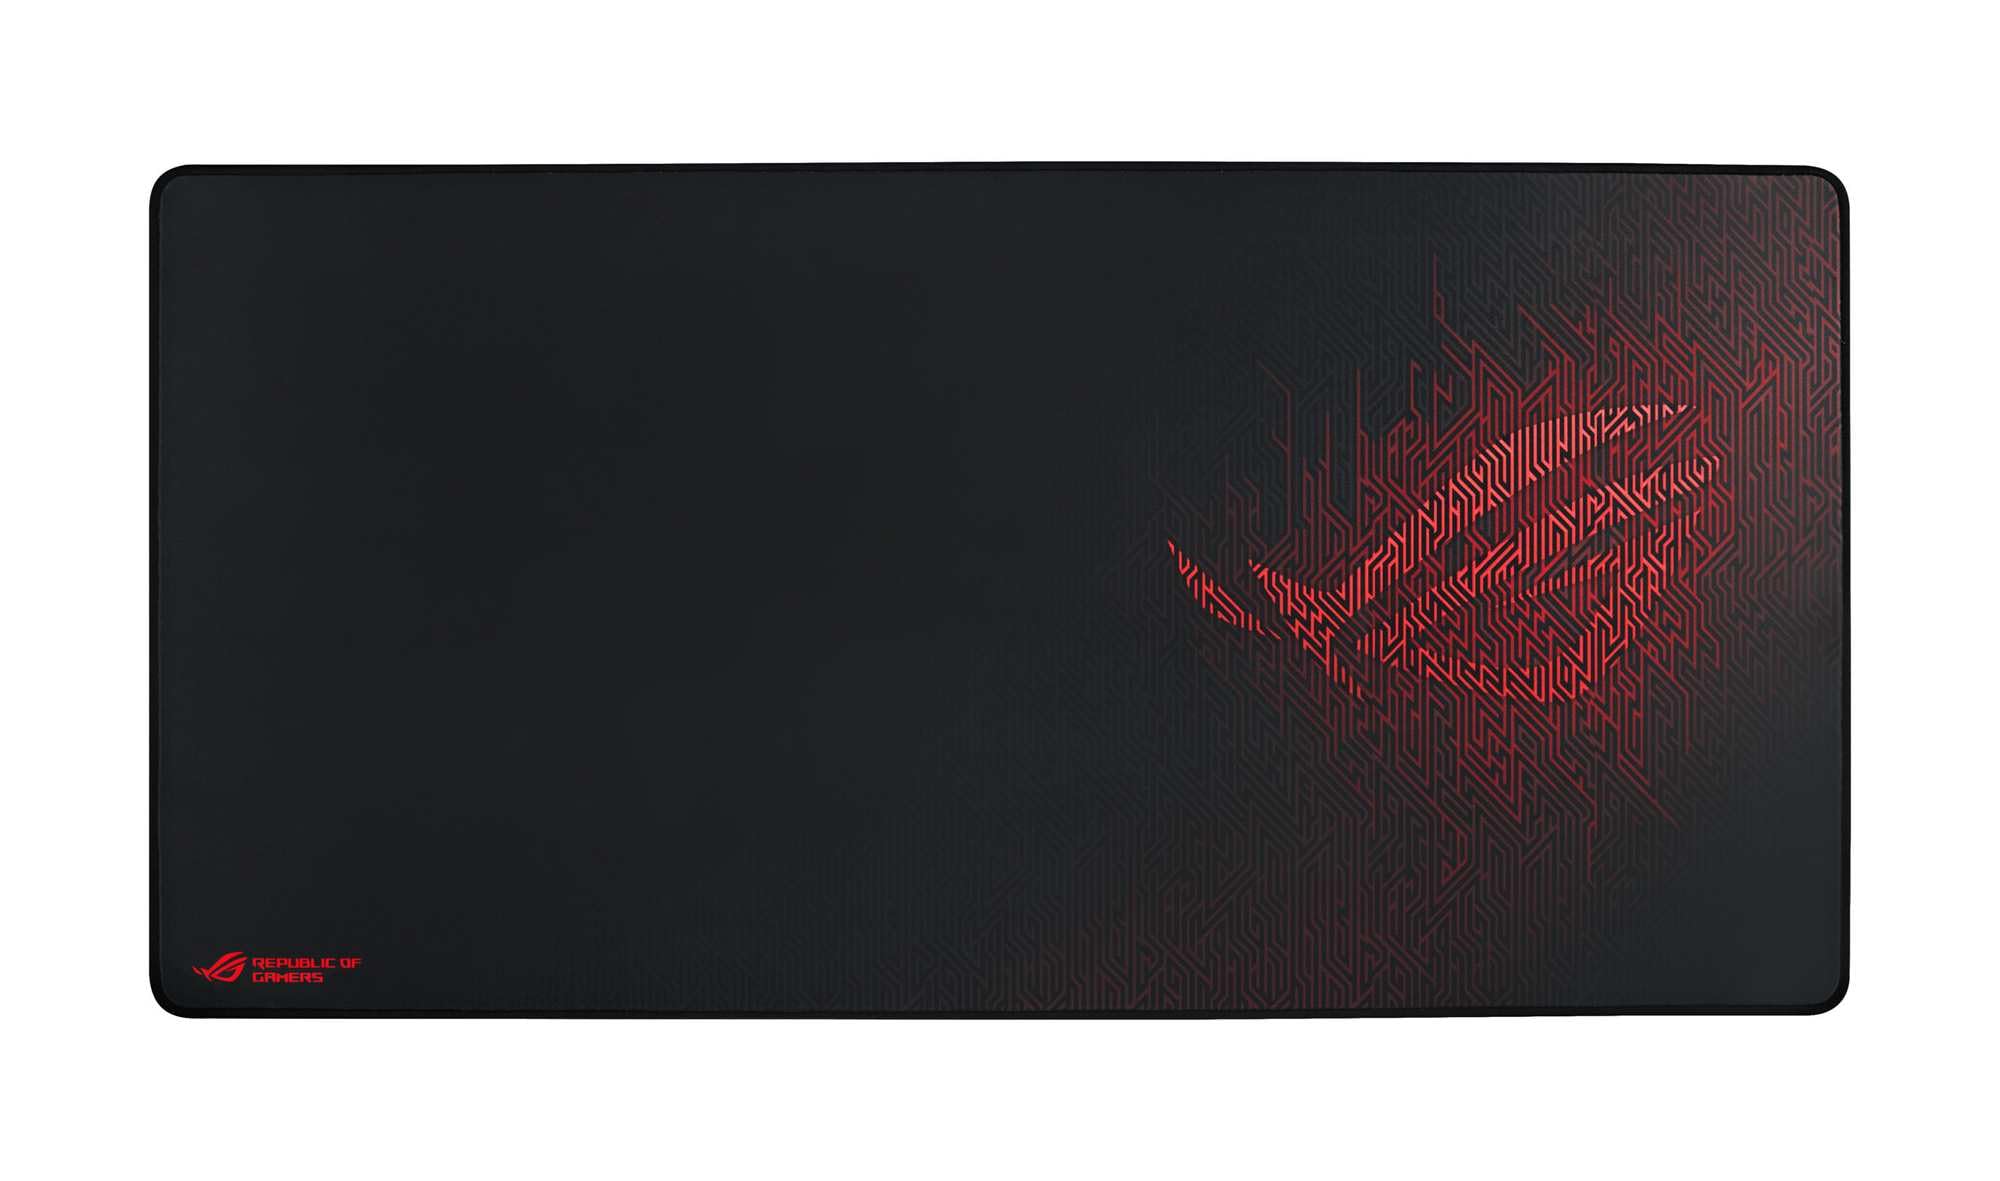 ASUS ROG Sheath Gaming Mauspad (Tischunterlage, extra groß, rutschfest) schwarz / rot